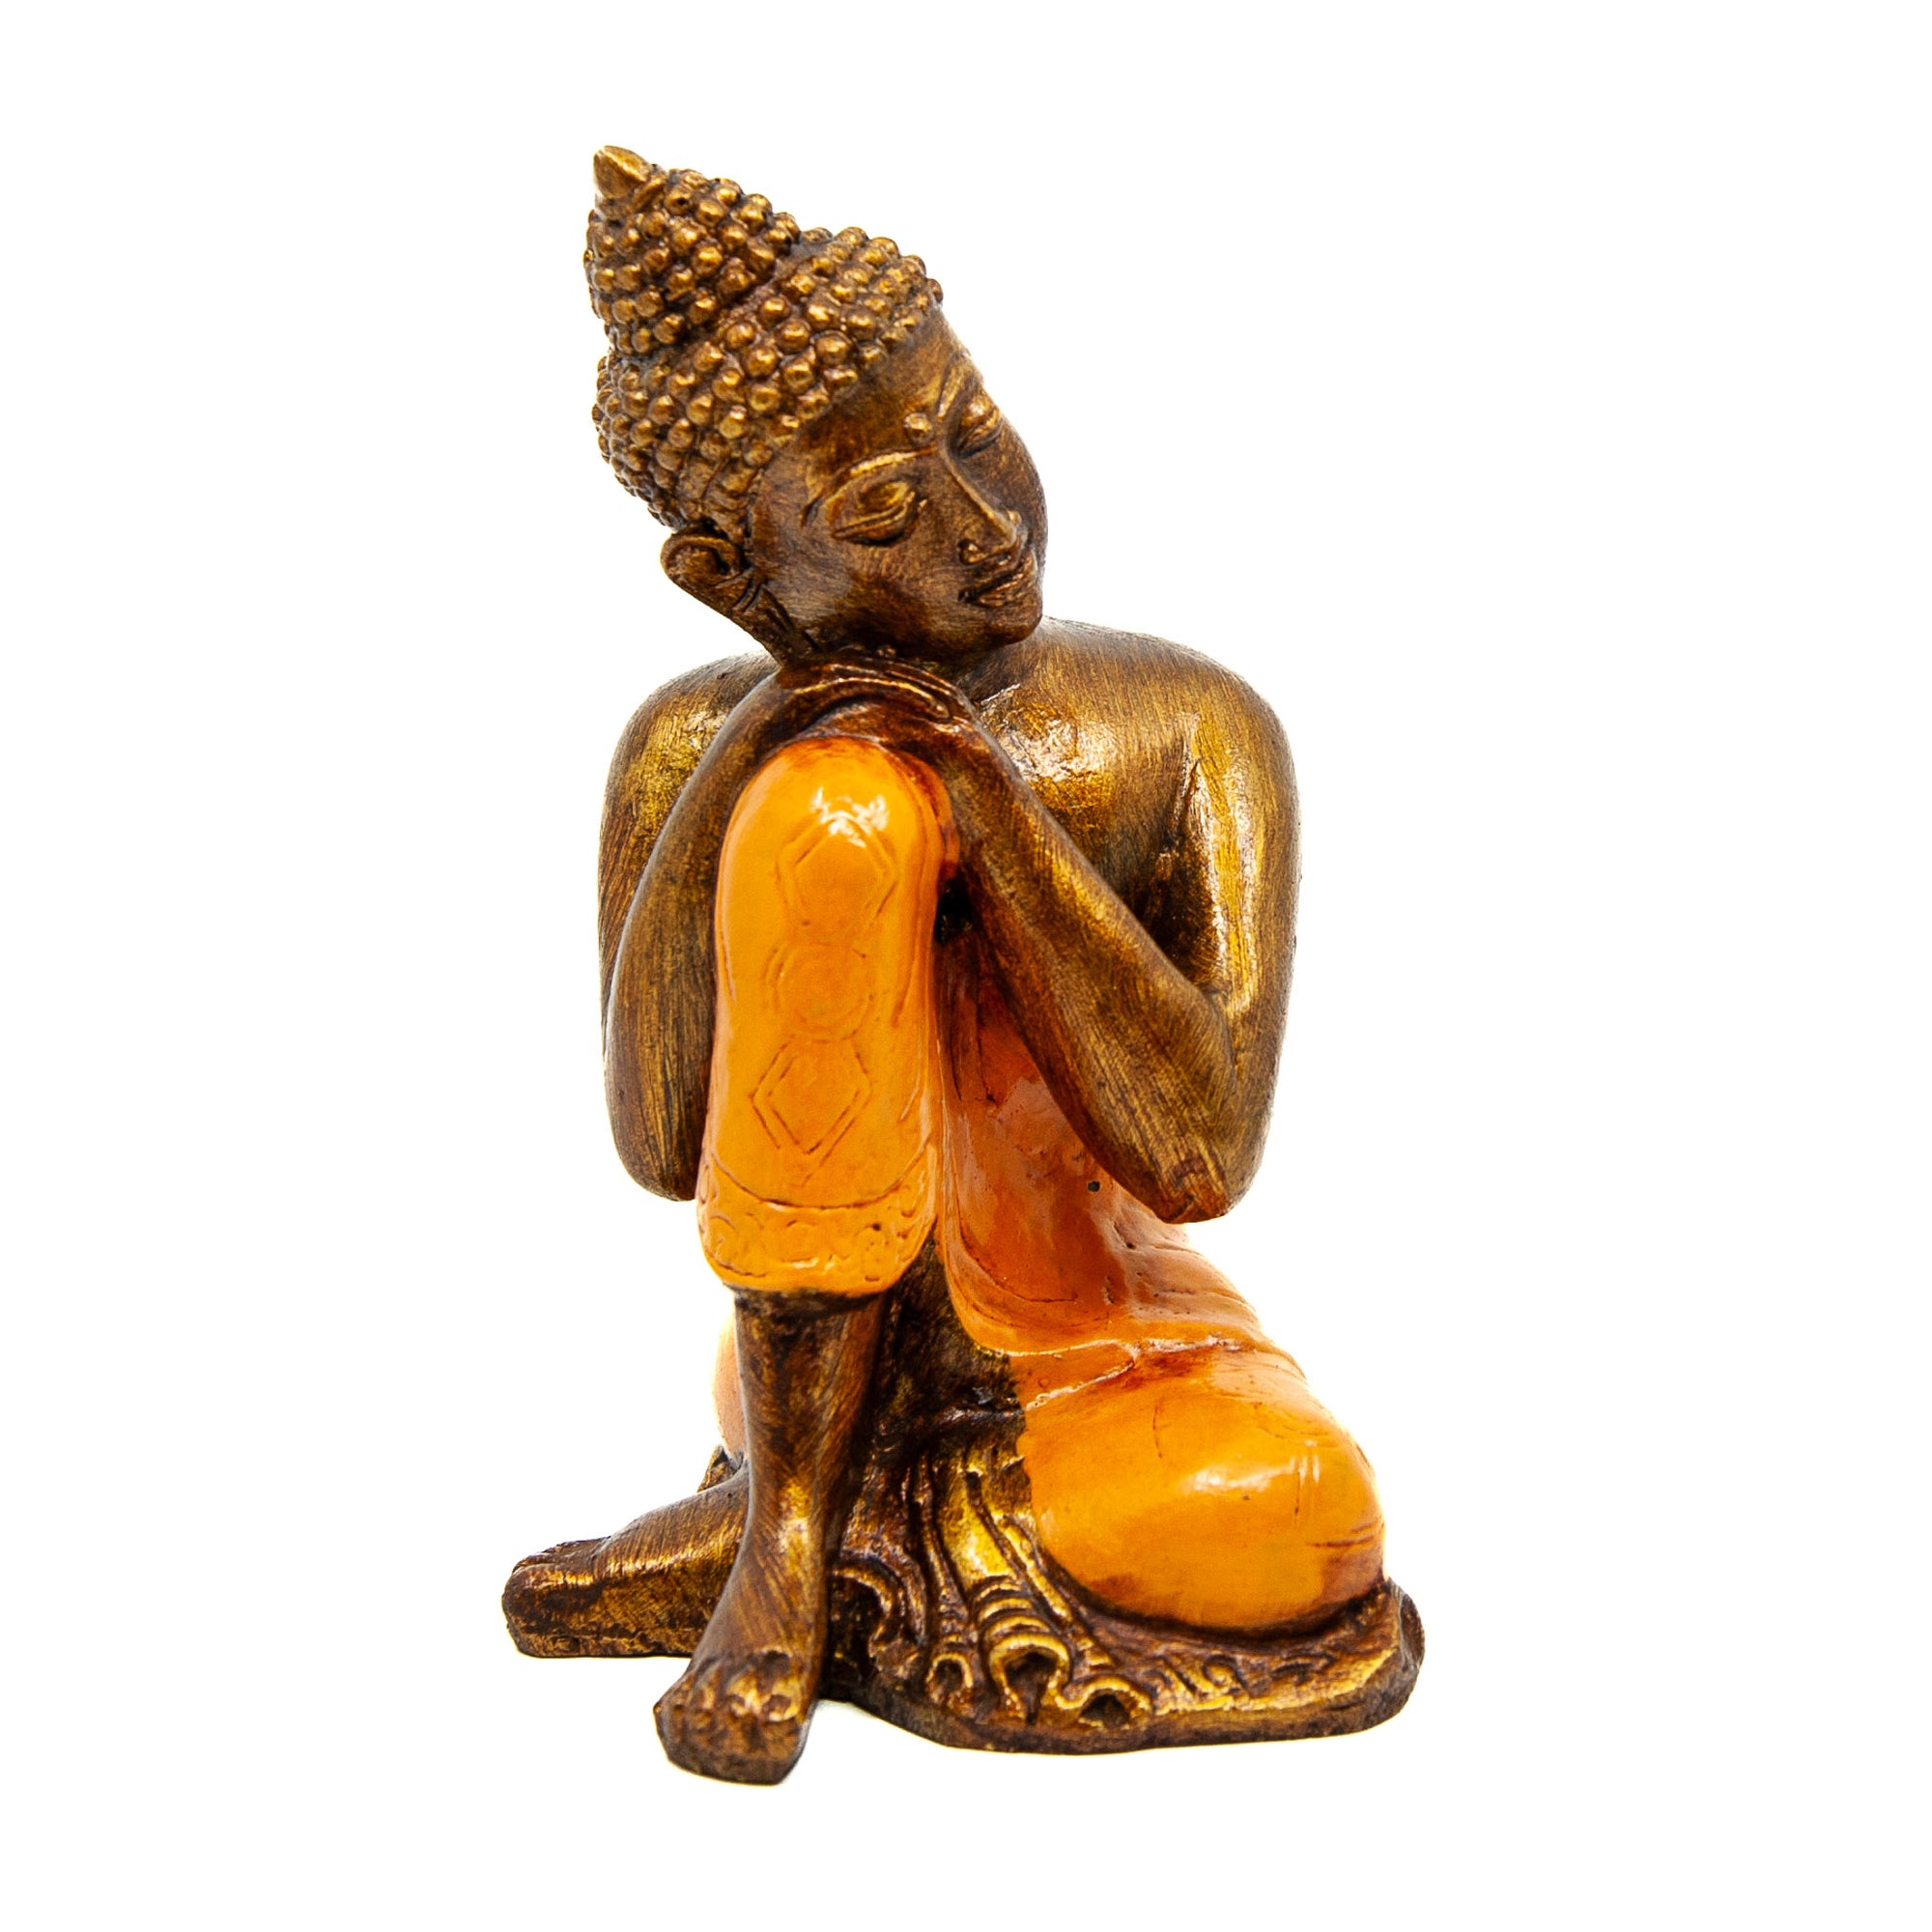 Resting Resin Buddha